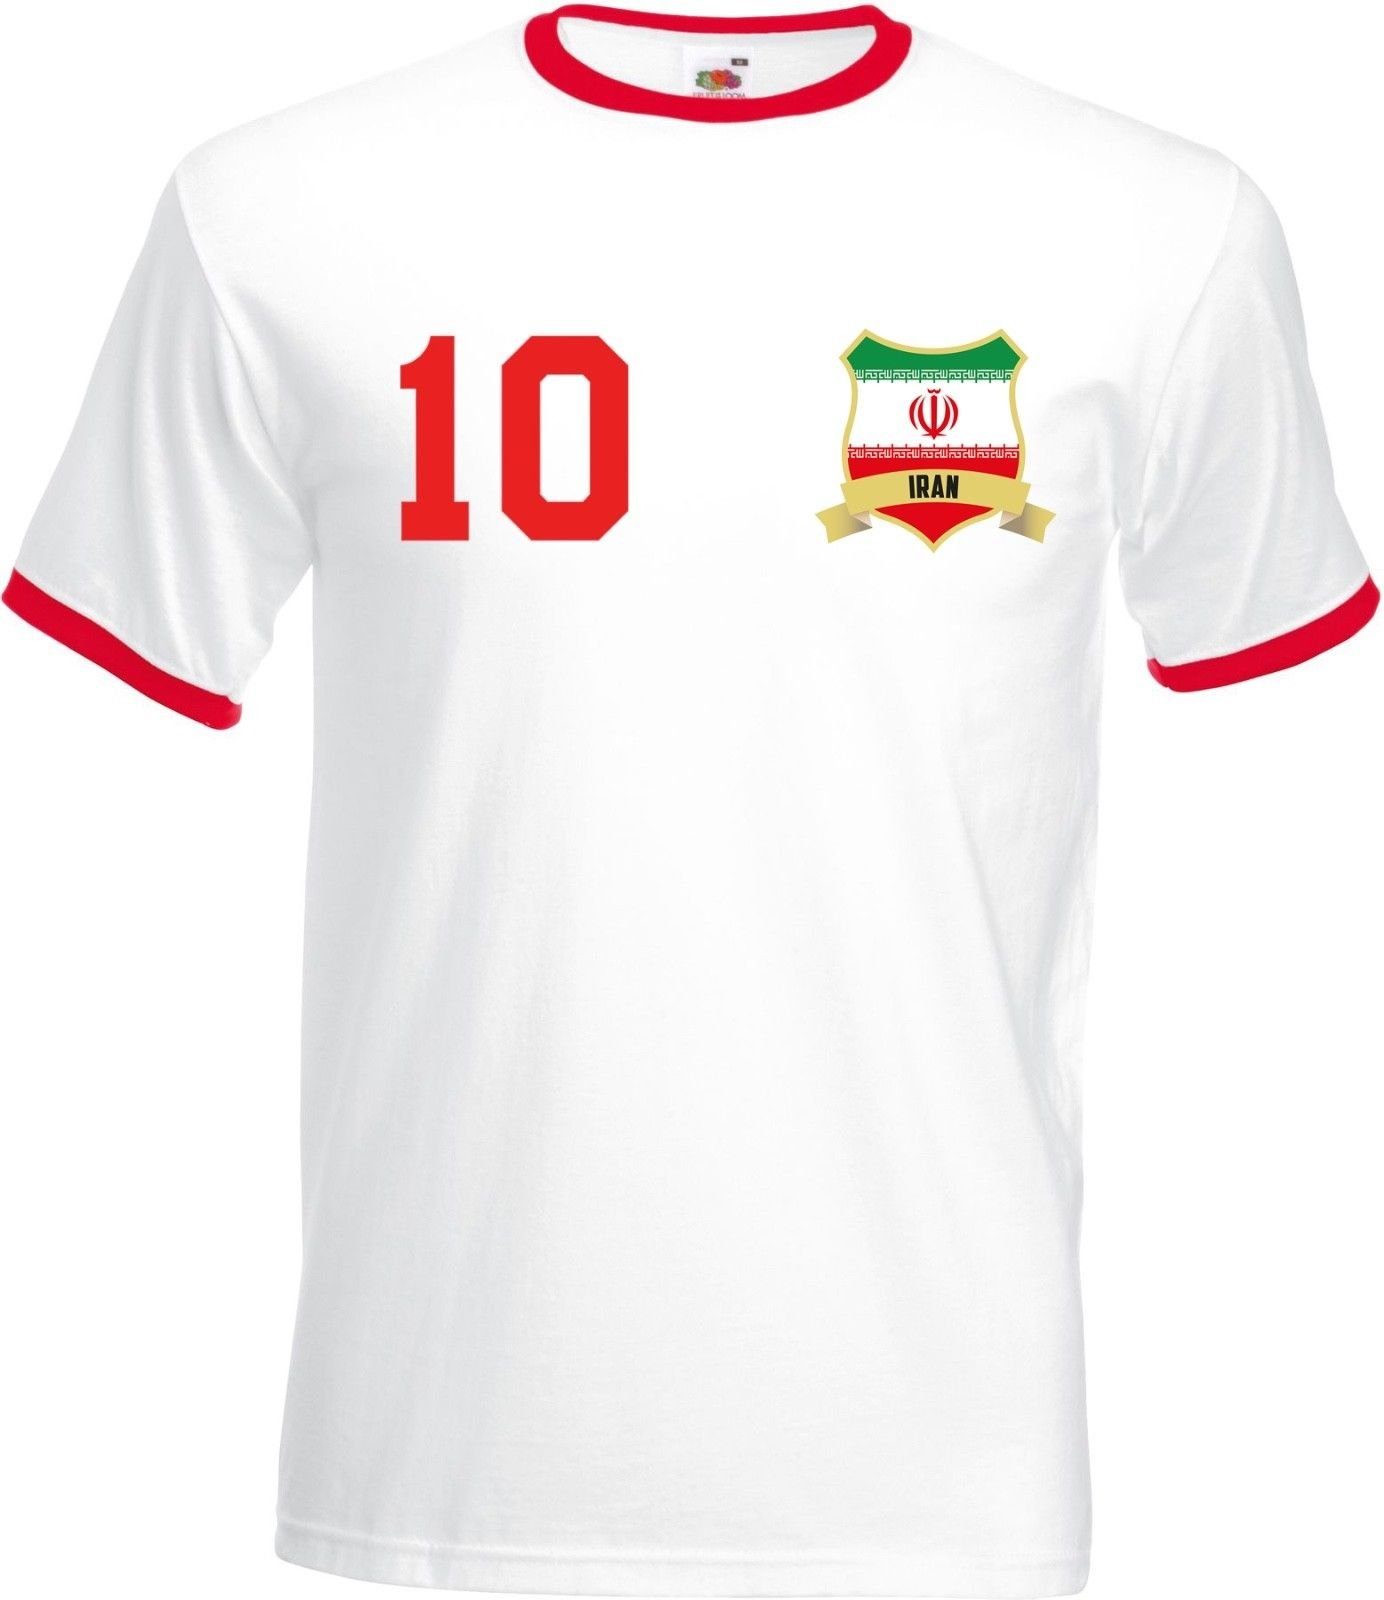 Youth Designz T-Shirt Iran im Fußball T-Shirt trendigem Motiv mit Herren Trikot Look